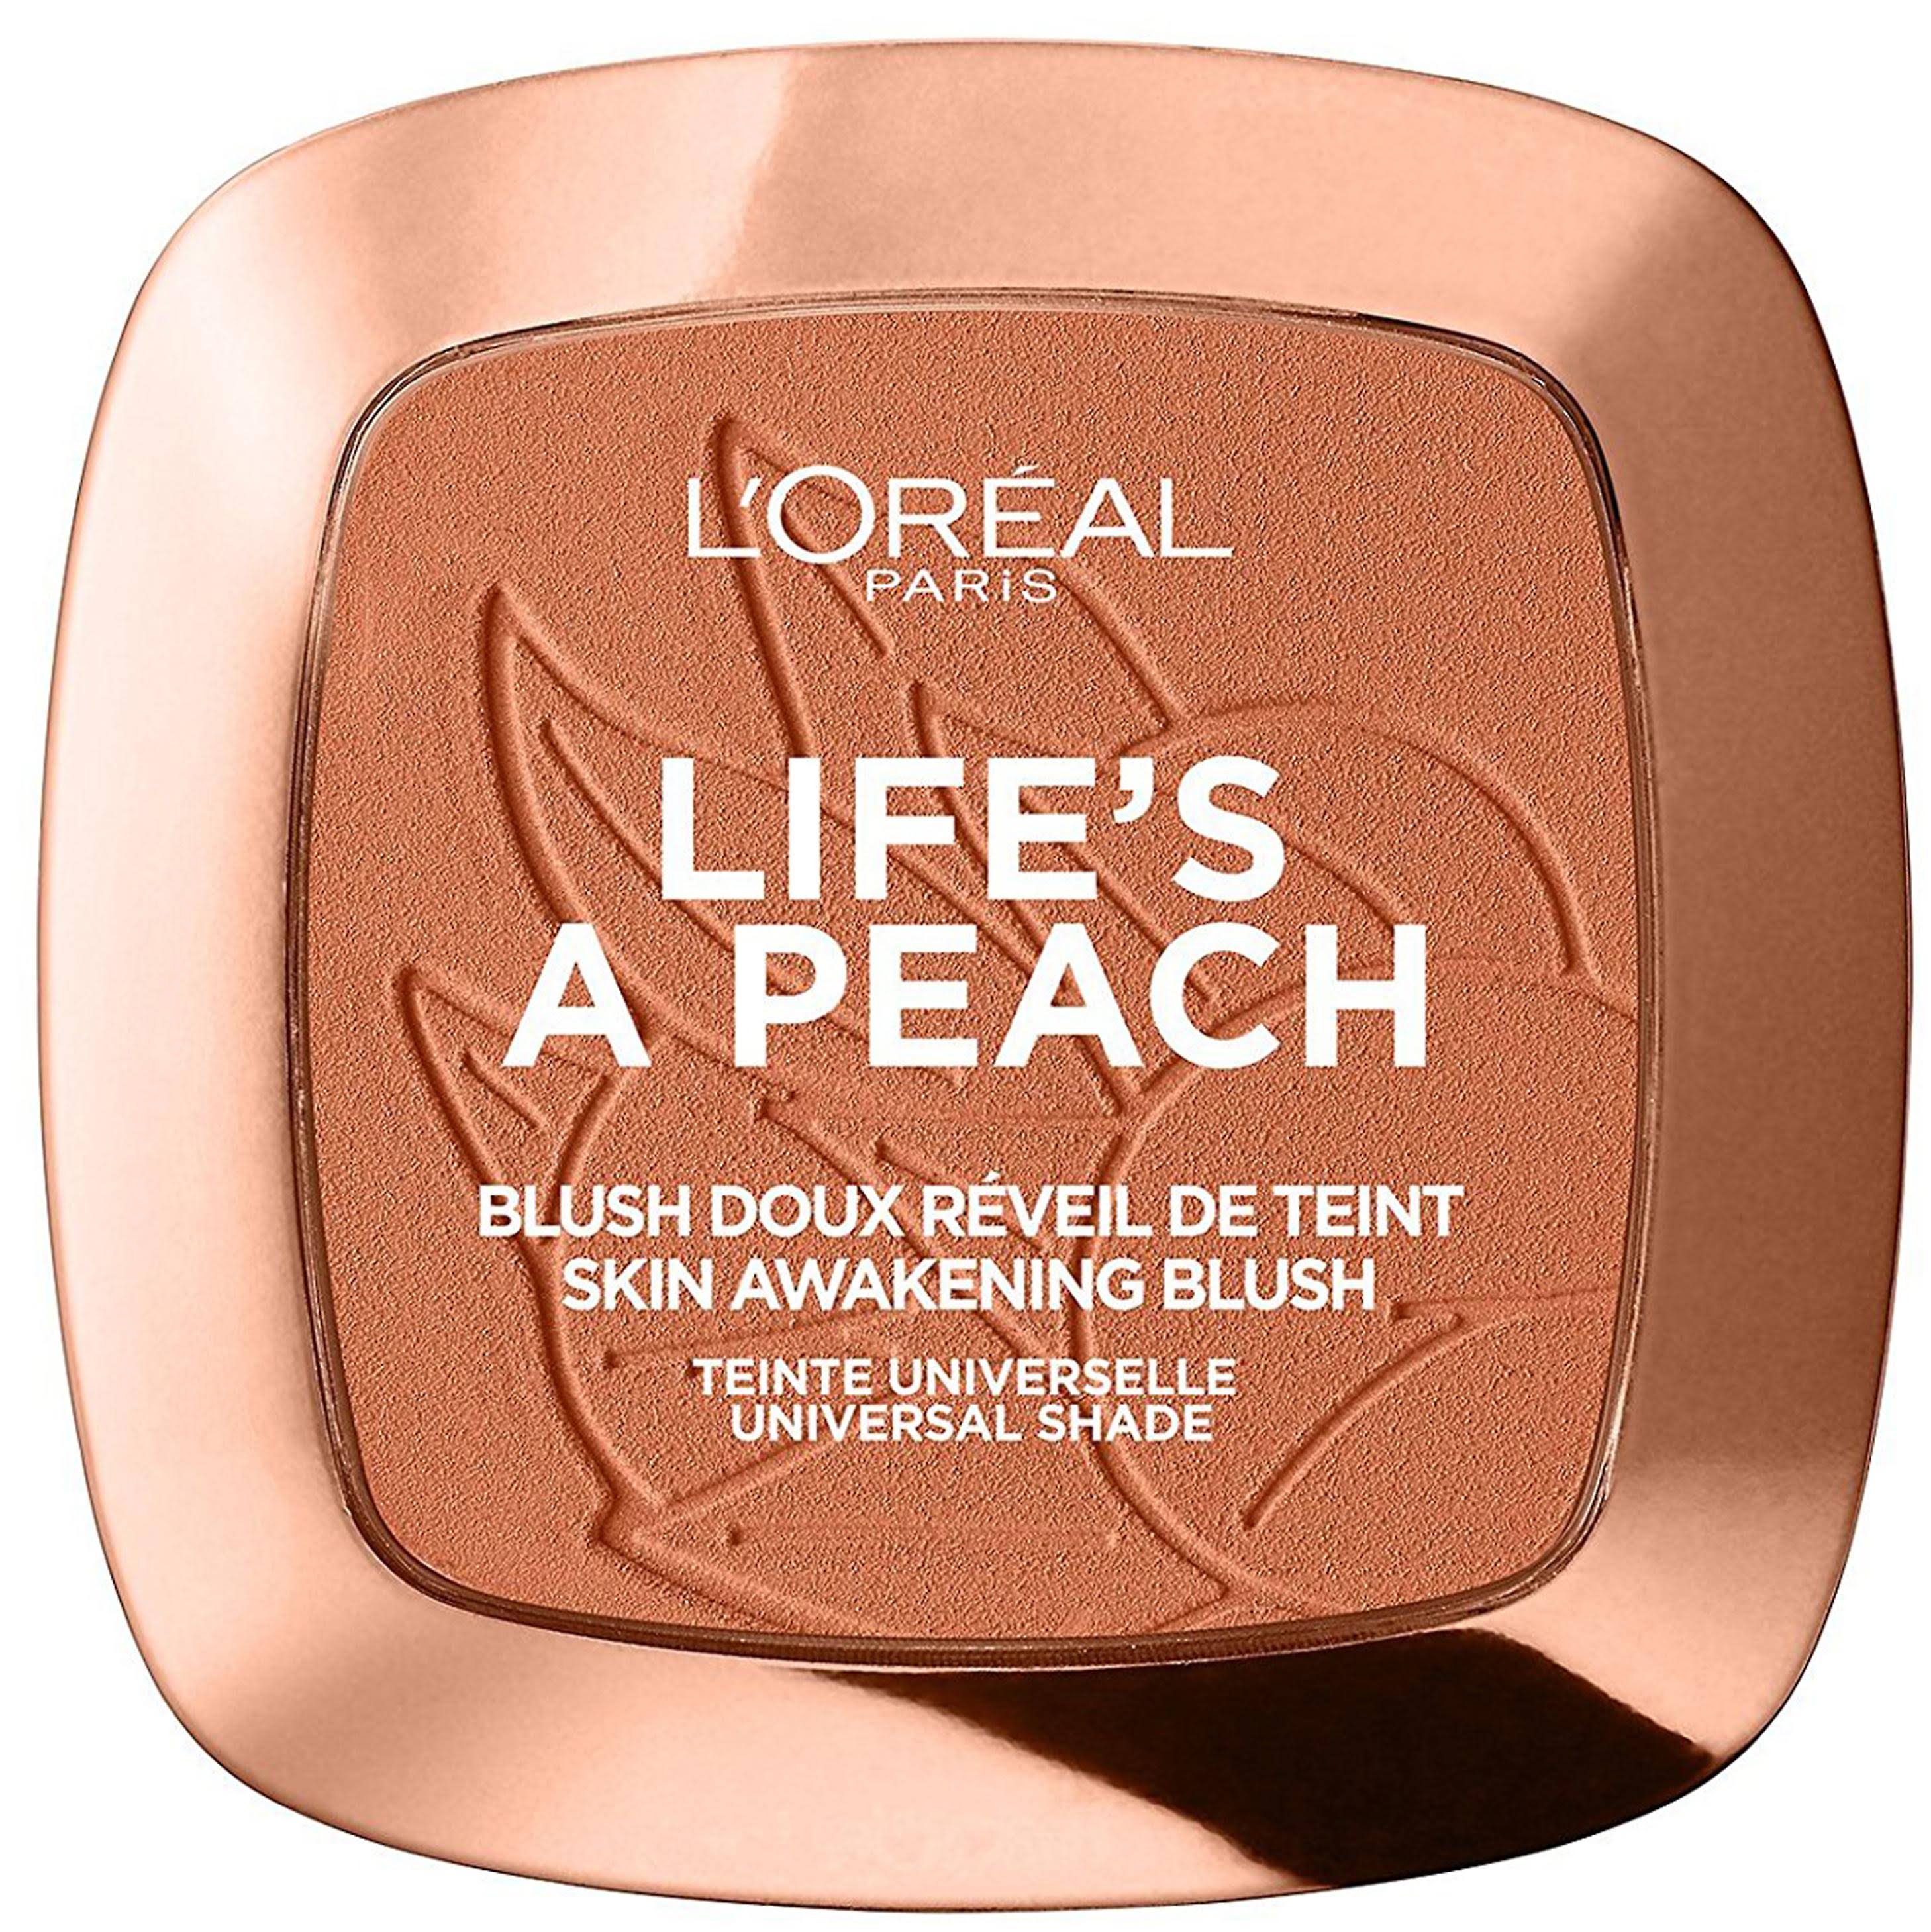 L'Oreal Paris Life's A Peach Blush Powder